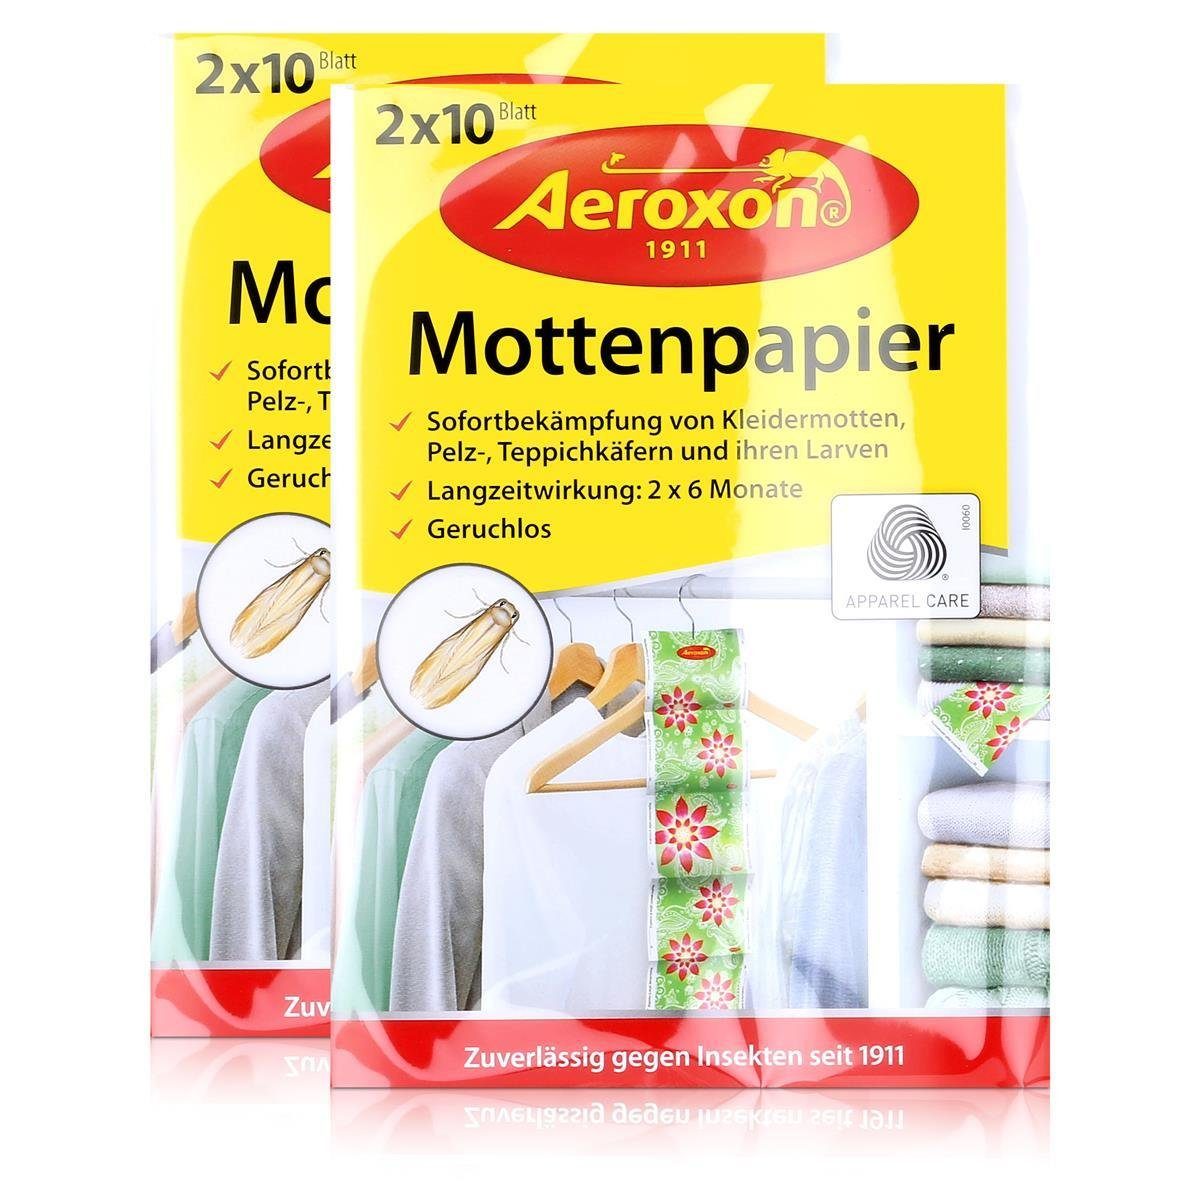 Aeroxon Insektenfalle Aeroxon Mottenpapier 2×10 Blatt – Sofortbekämpfung von Kleidermotten (